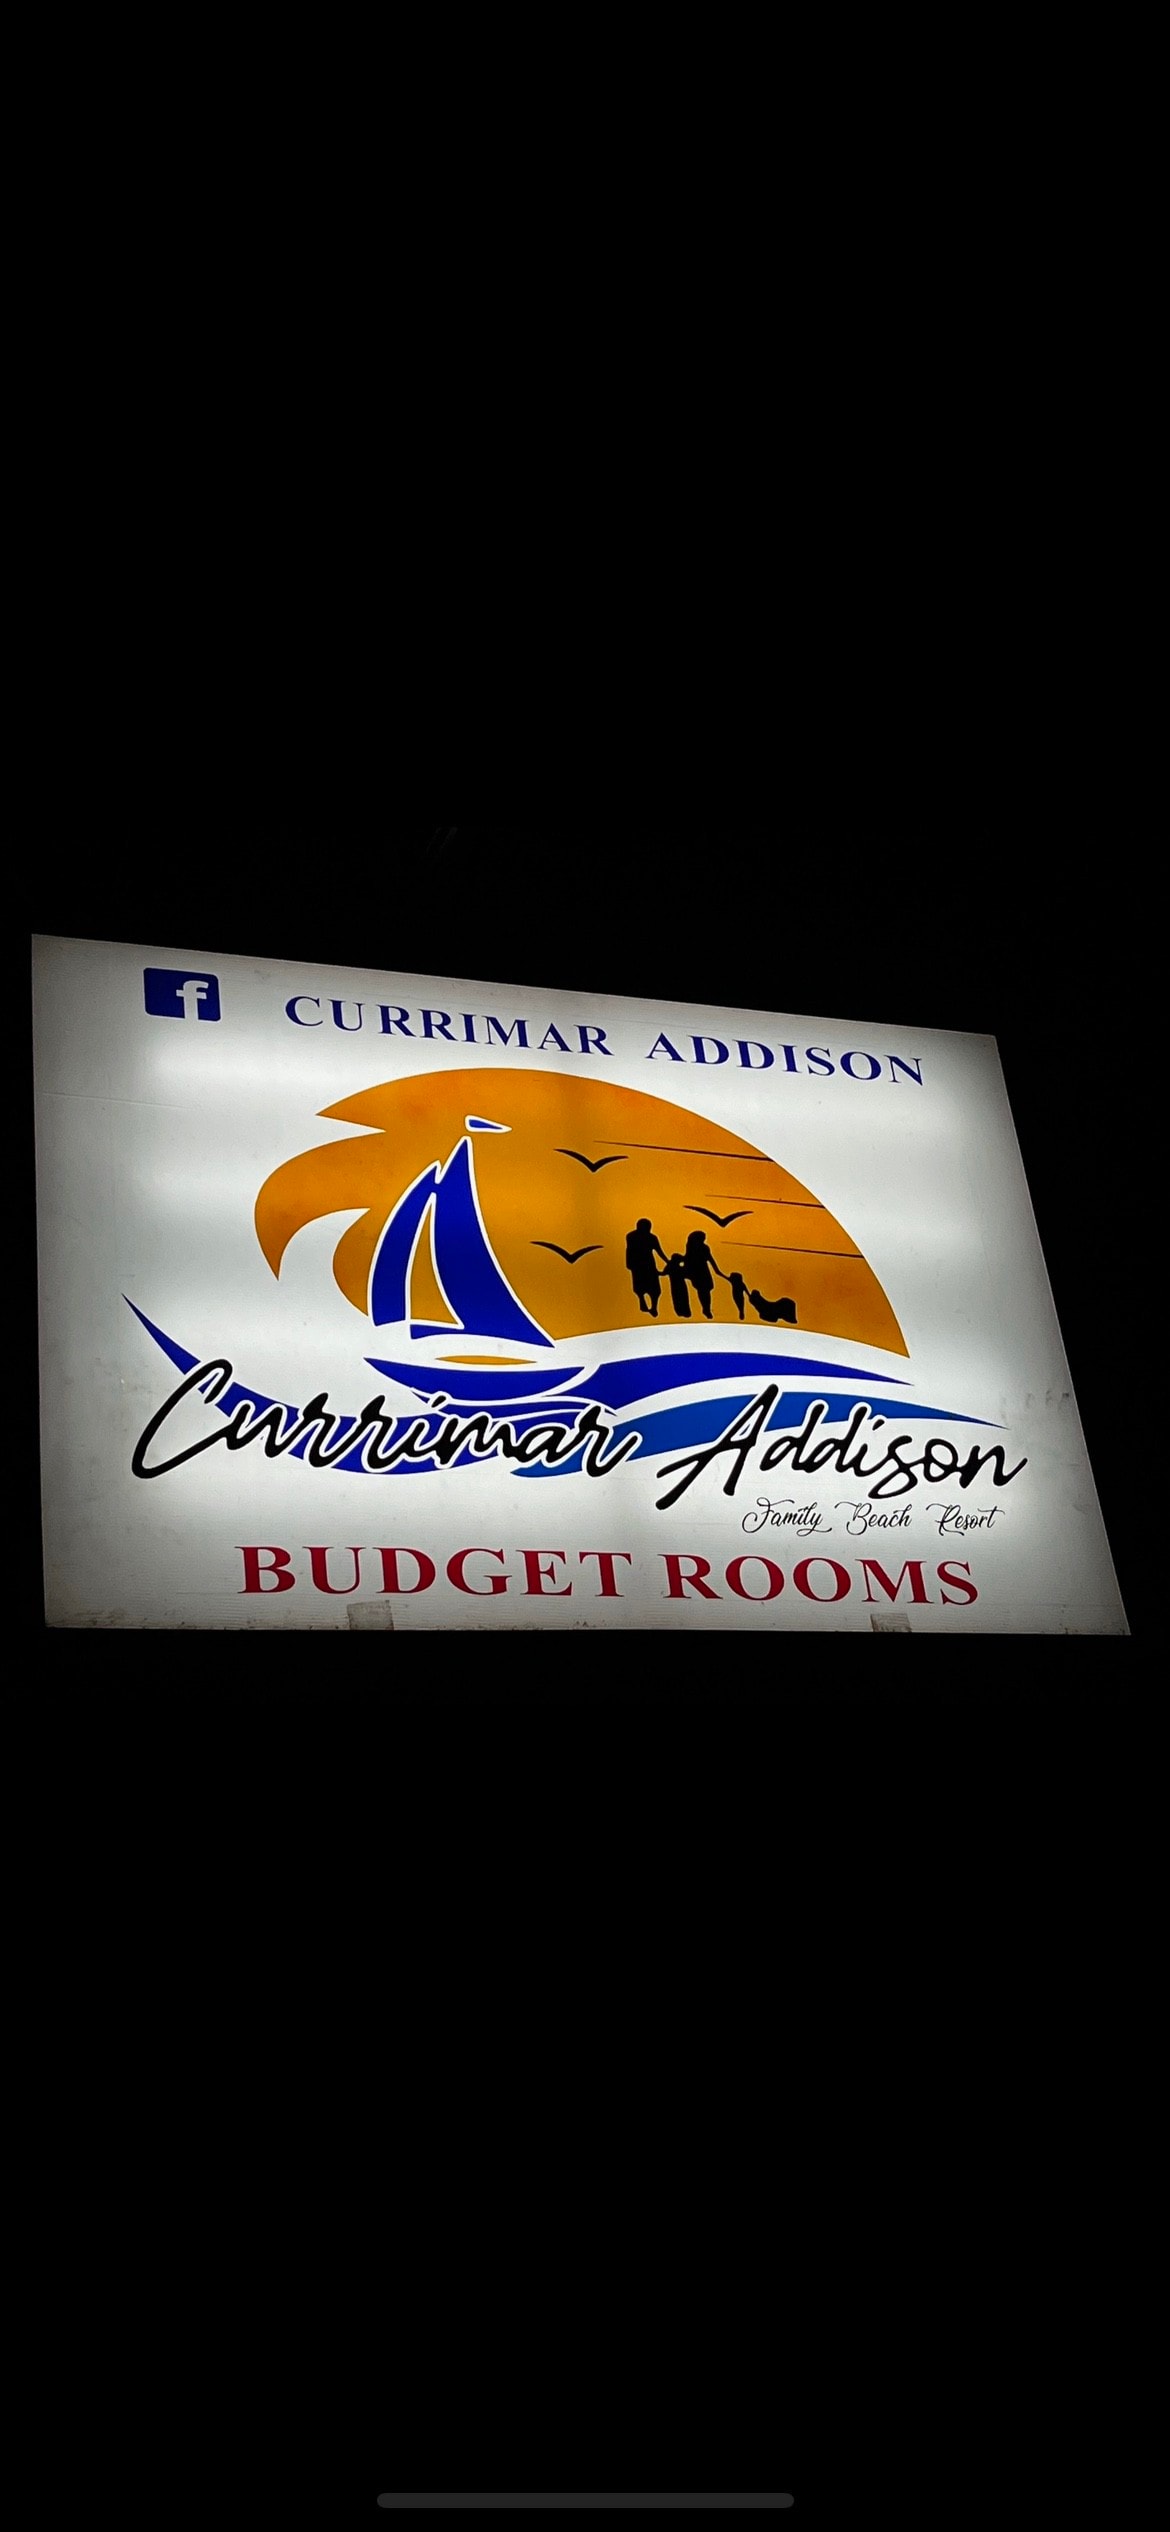 Currimar Addison Resort